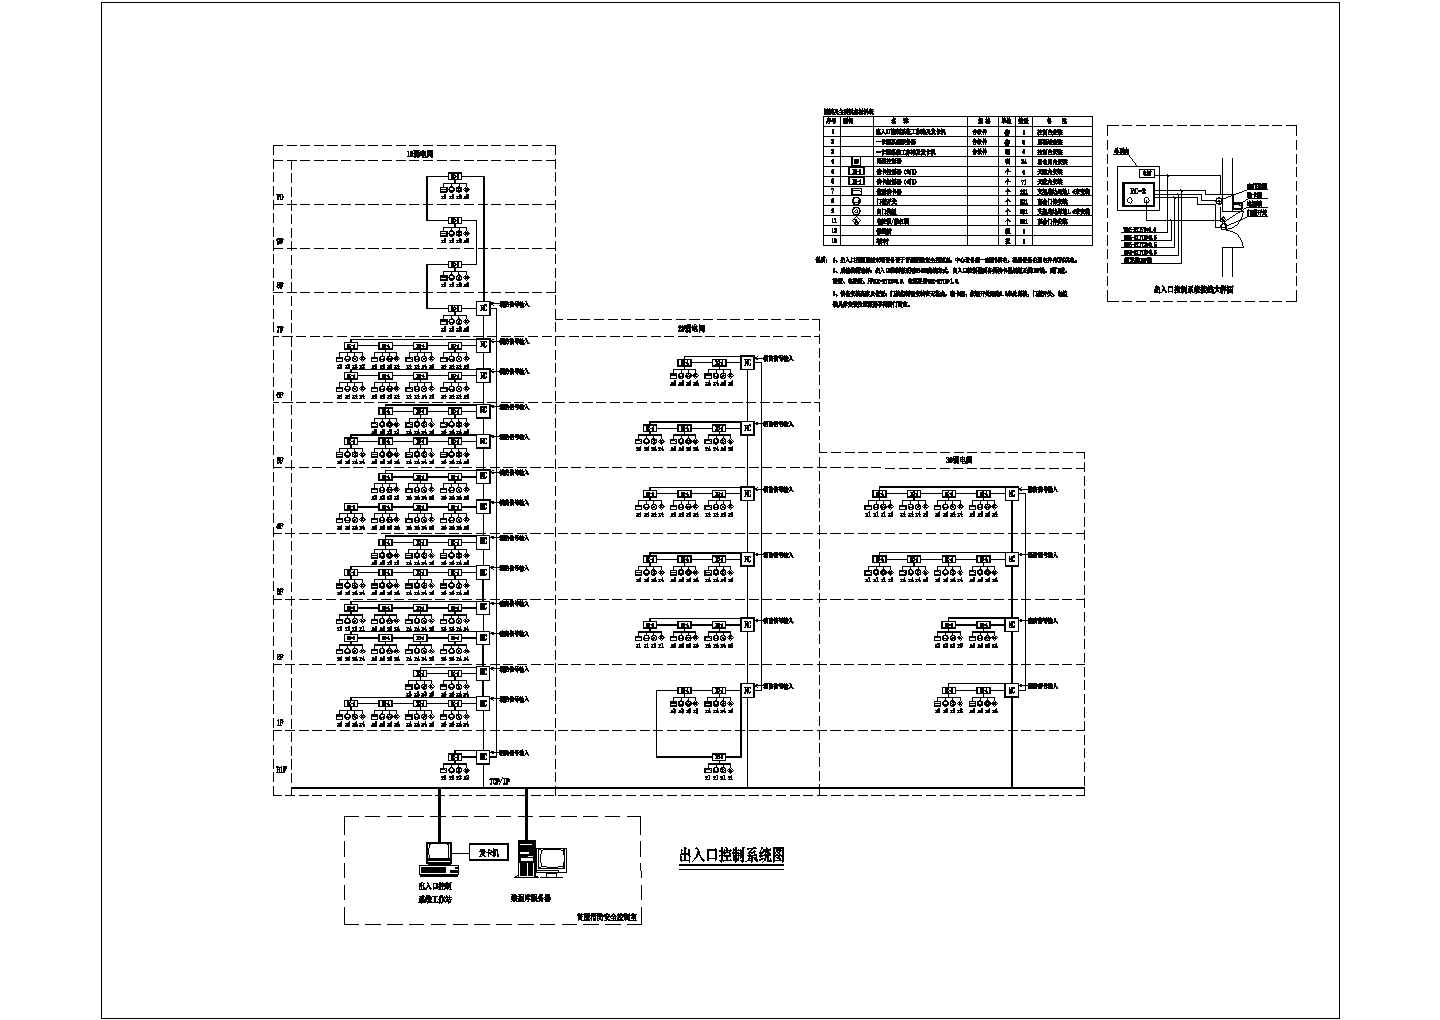 松山湖科研楼智能化系统图(含停车场管理图、停车场岗亭)